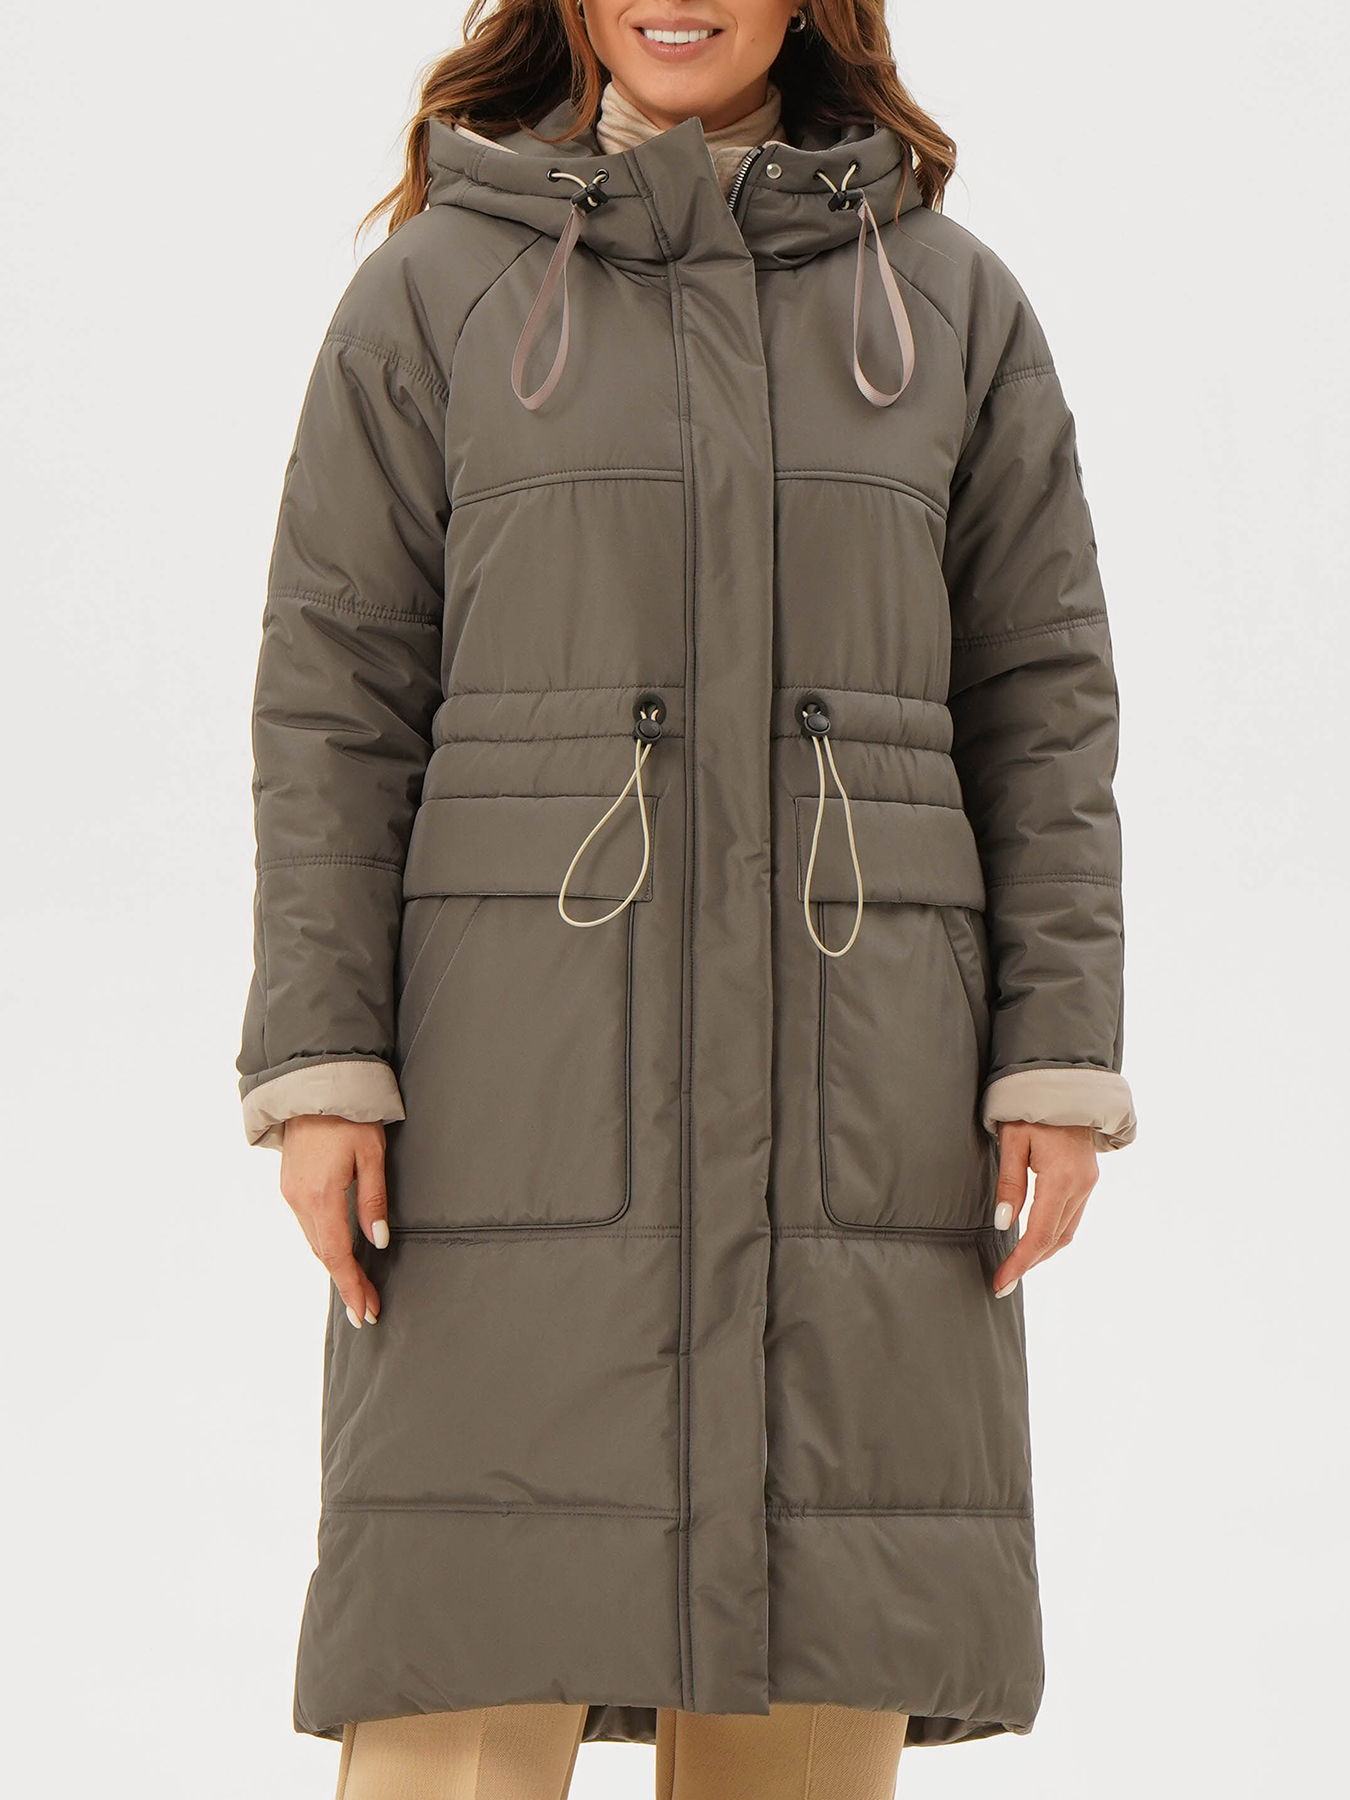 Пальто зимнее Maritta 433583-025, цвет хаки, размер 48